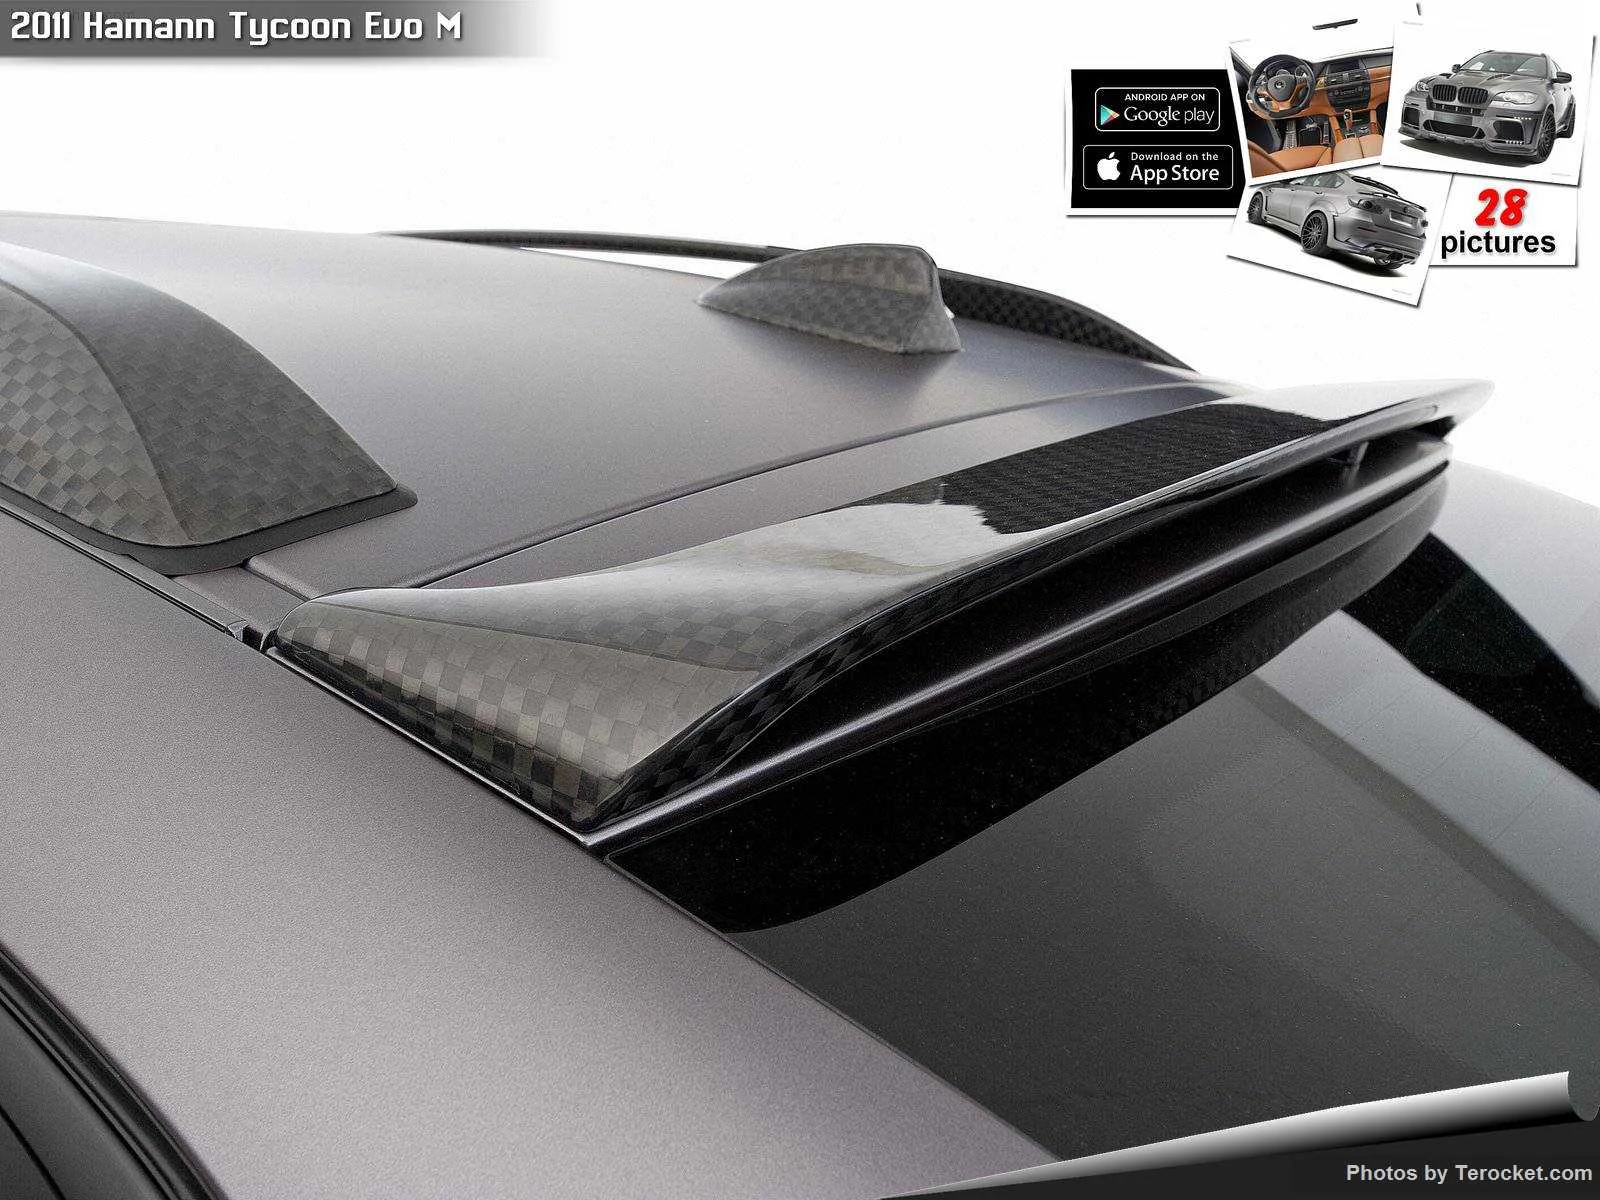 Hình ảnh xe ô tô Hamann Tycoon Evo M 2011 & nội ngoại thất